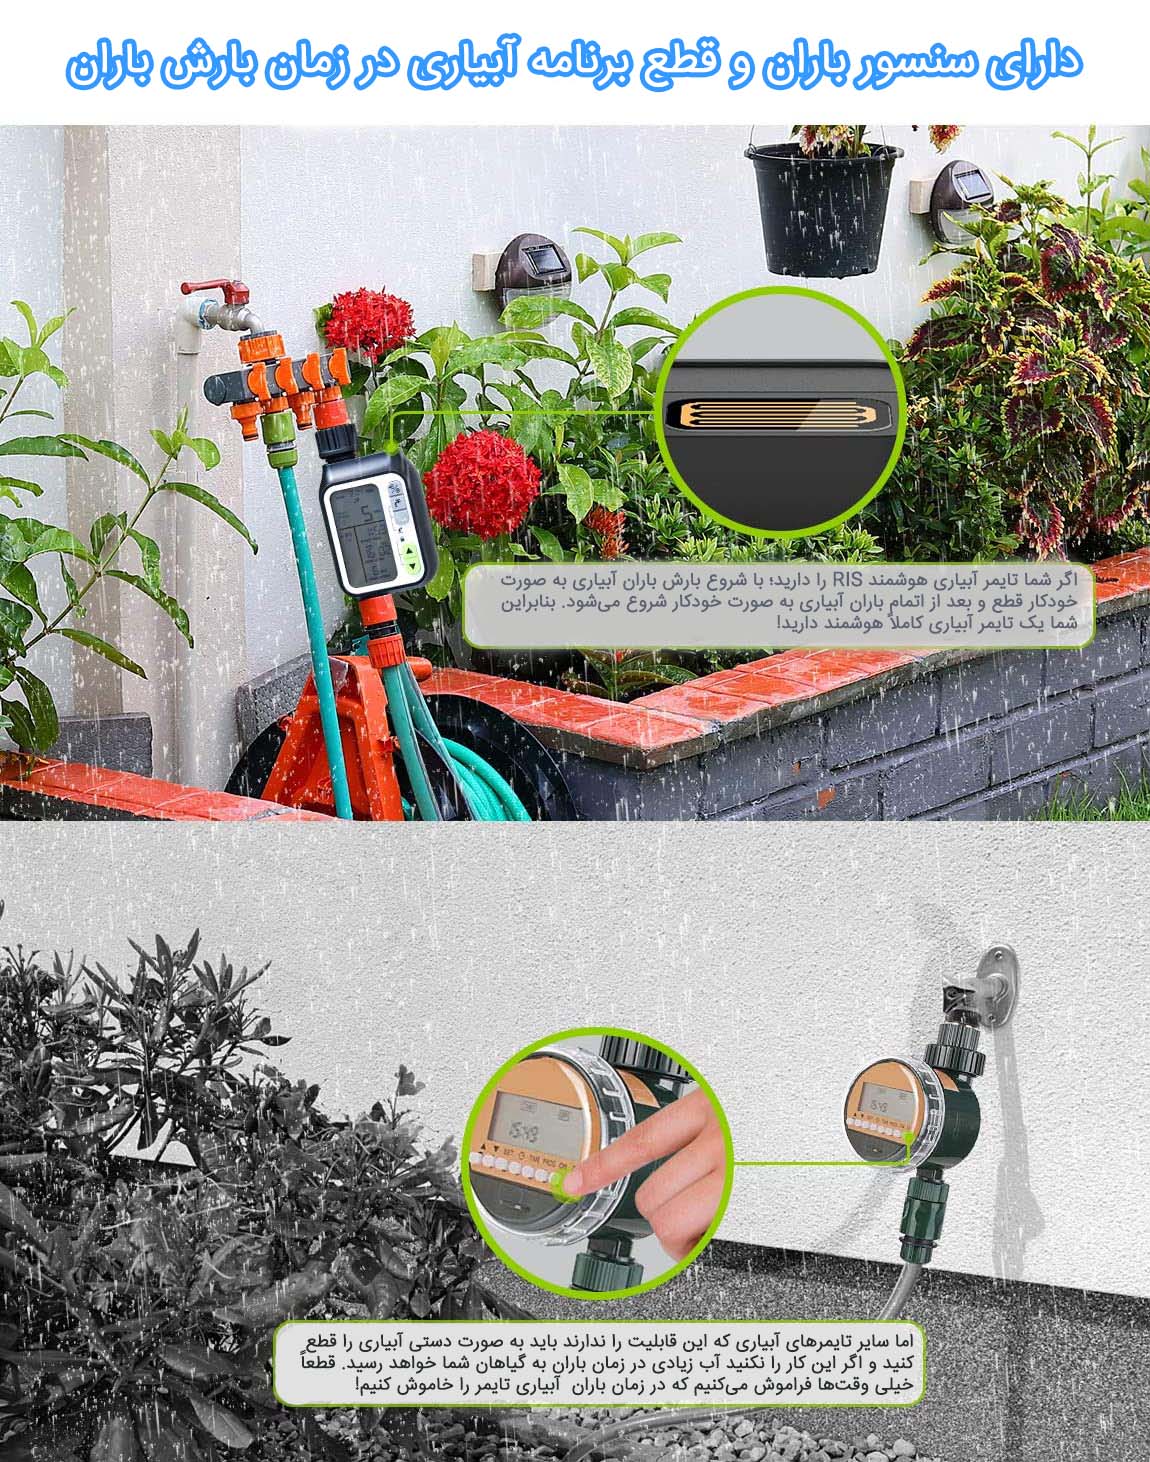 تایمر آبیاری هوشمند با سنسور باران